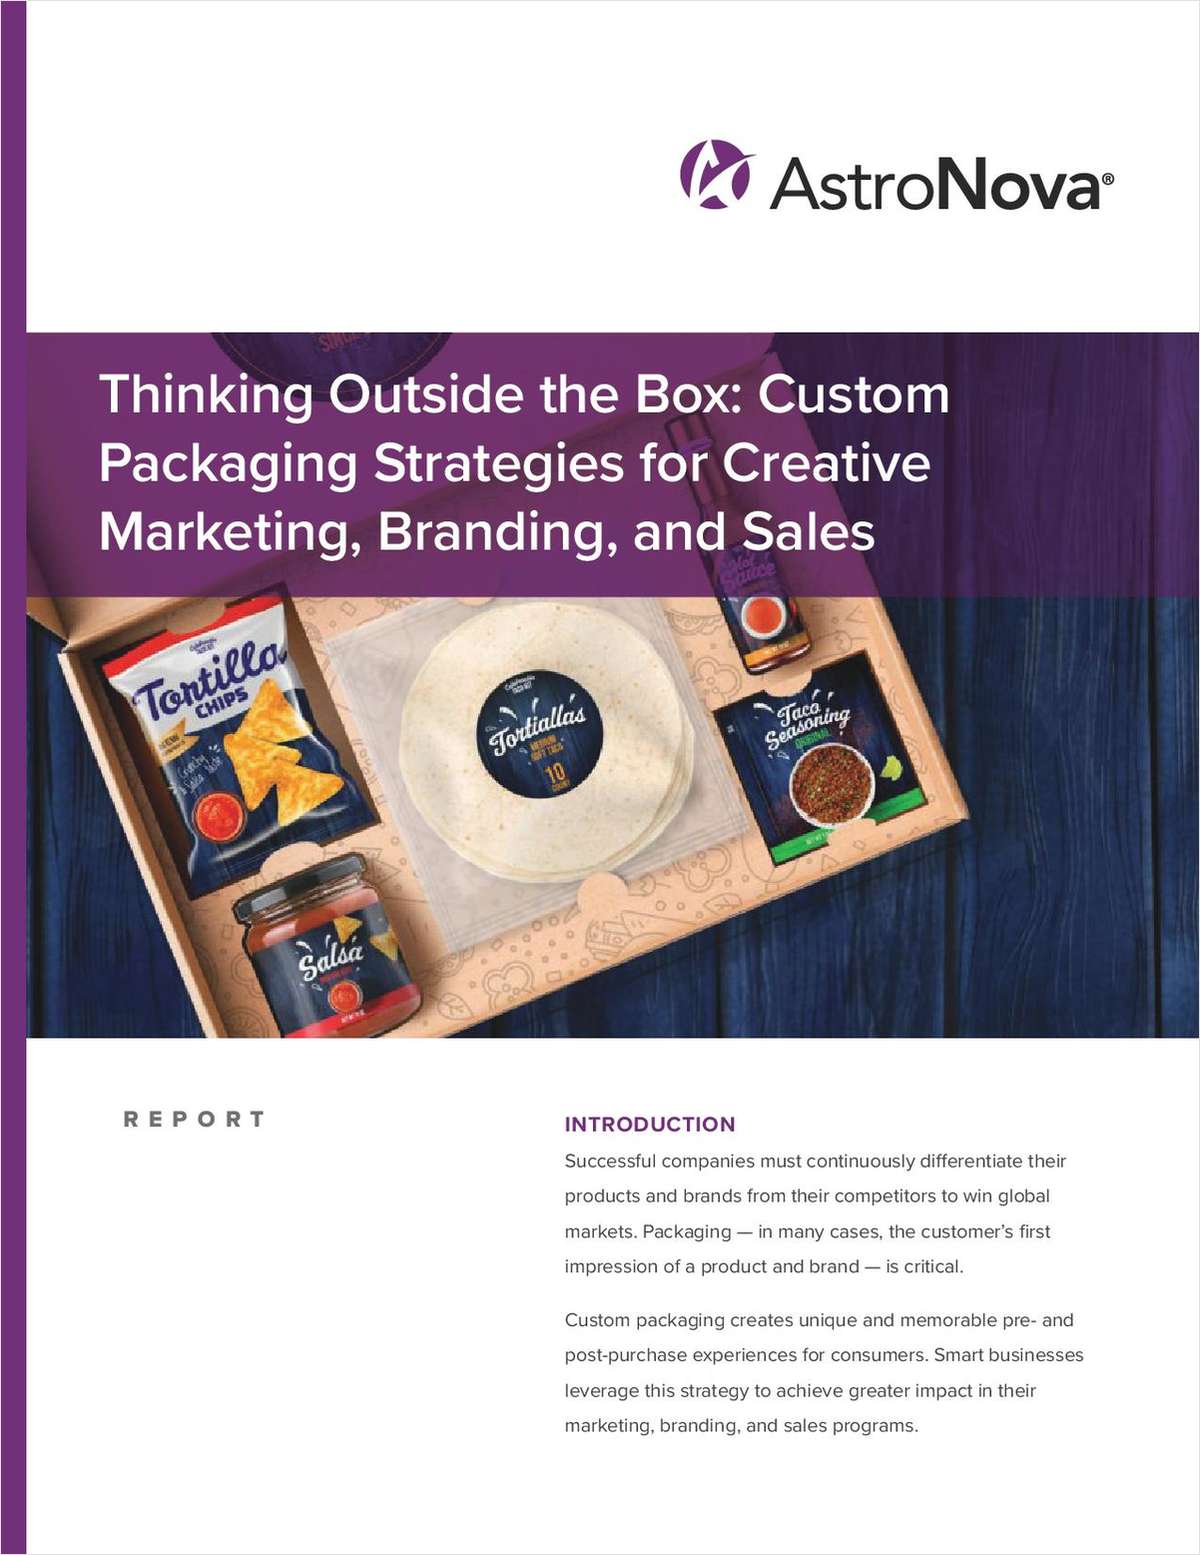 Custom Packaging Strategies for Marketing, Branding, and Sales